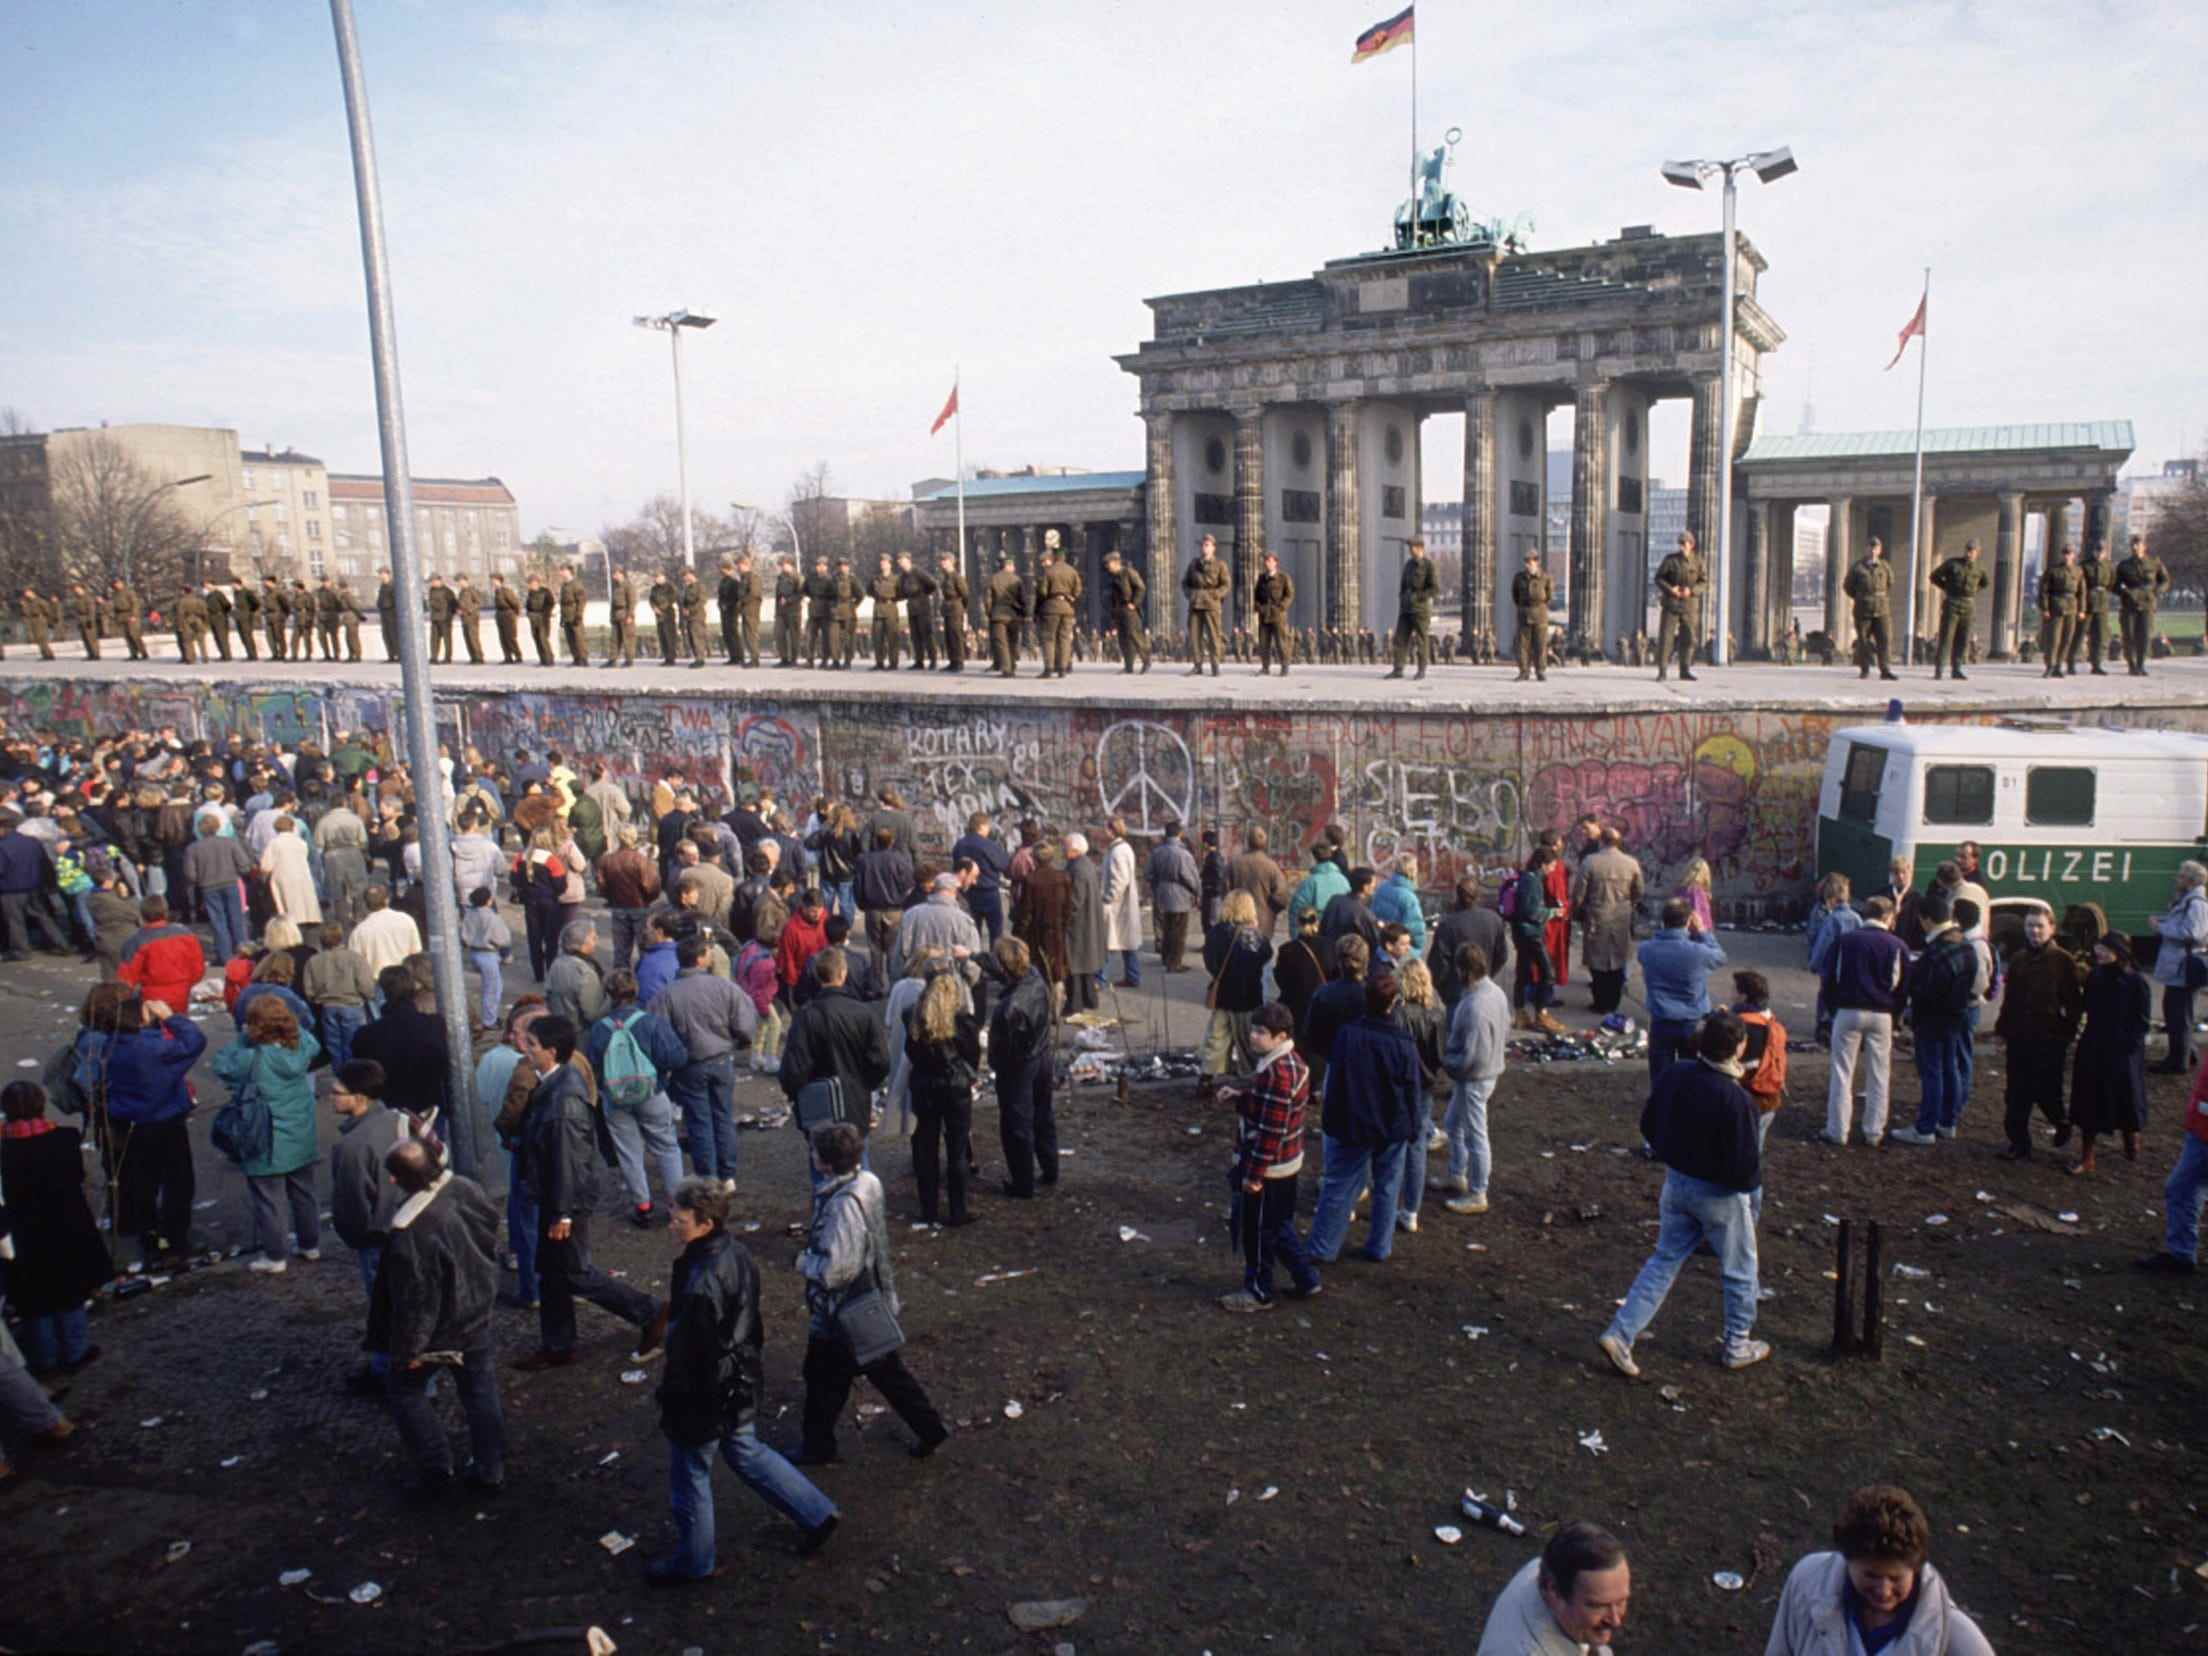 Menschen versammeln sich auf einer Seite der Berliner Mauer, während deutsche Soldaten auf einer erhöhten Plattform vor dem Brandenburger Tor stehen